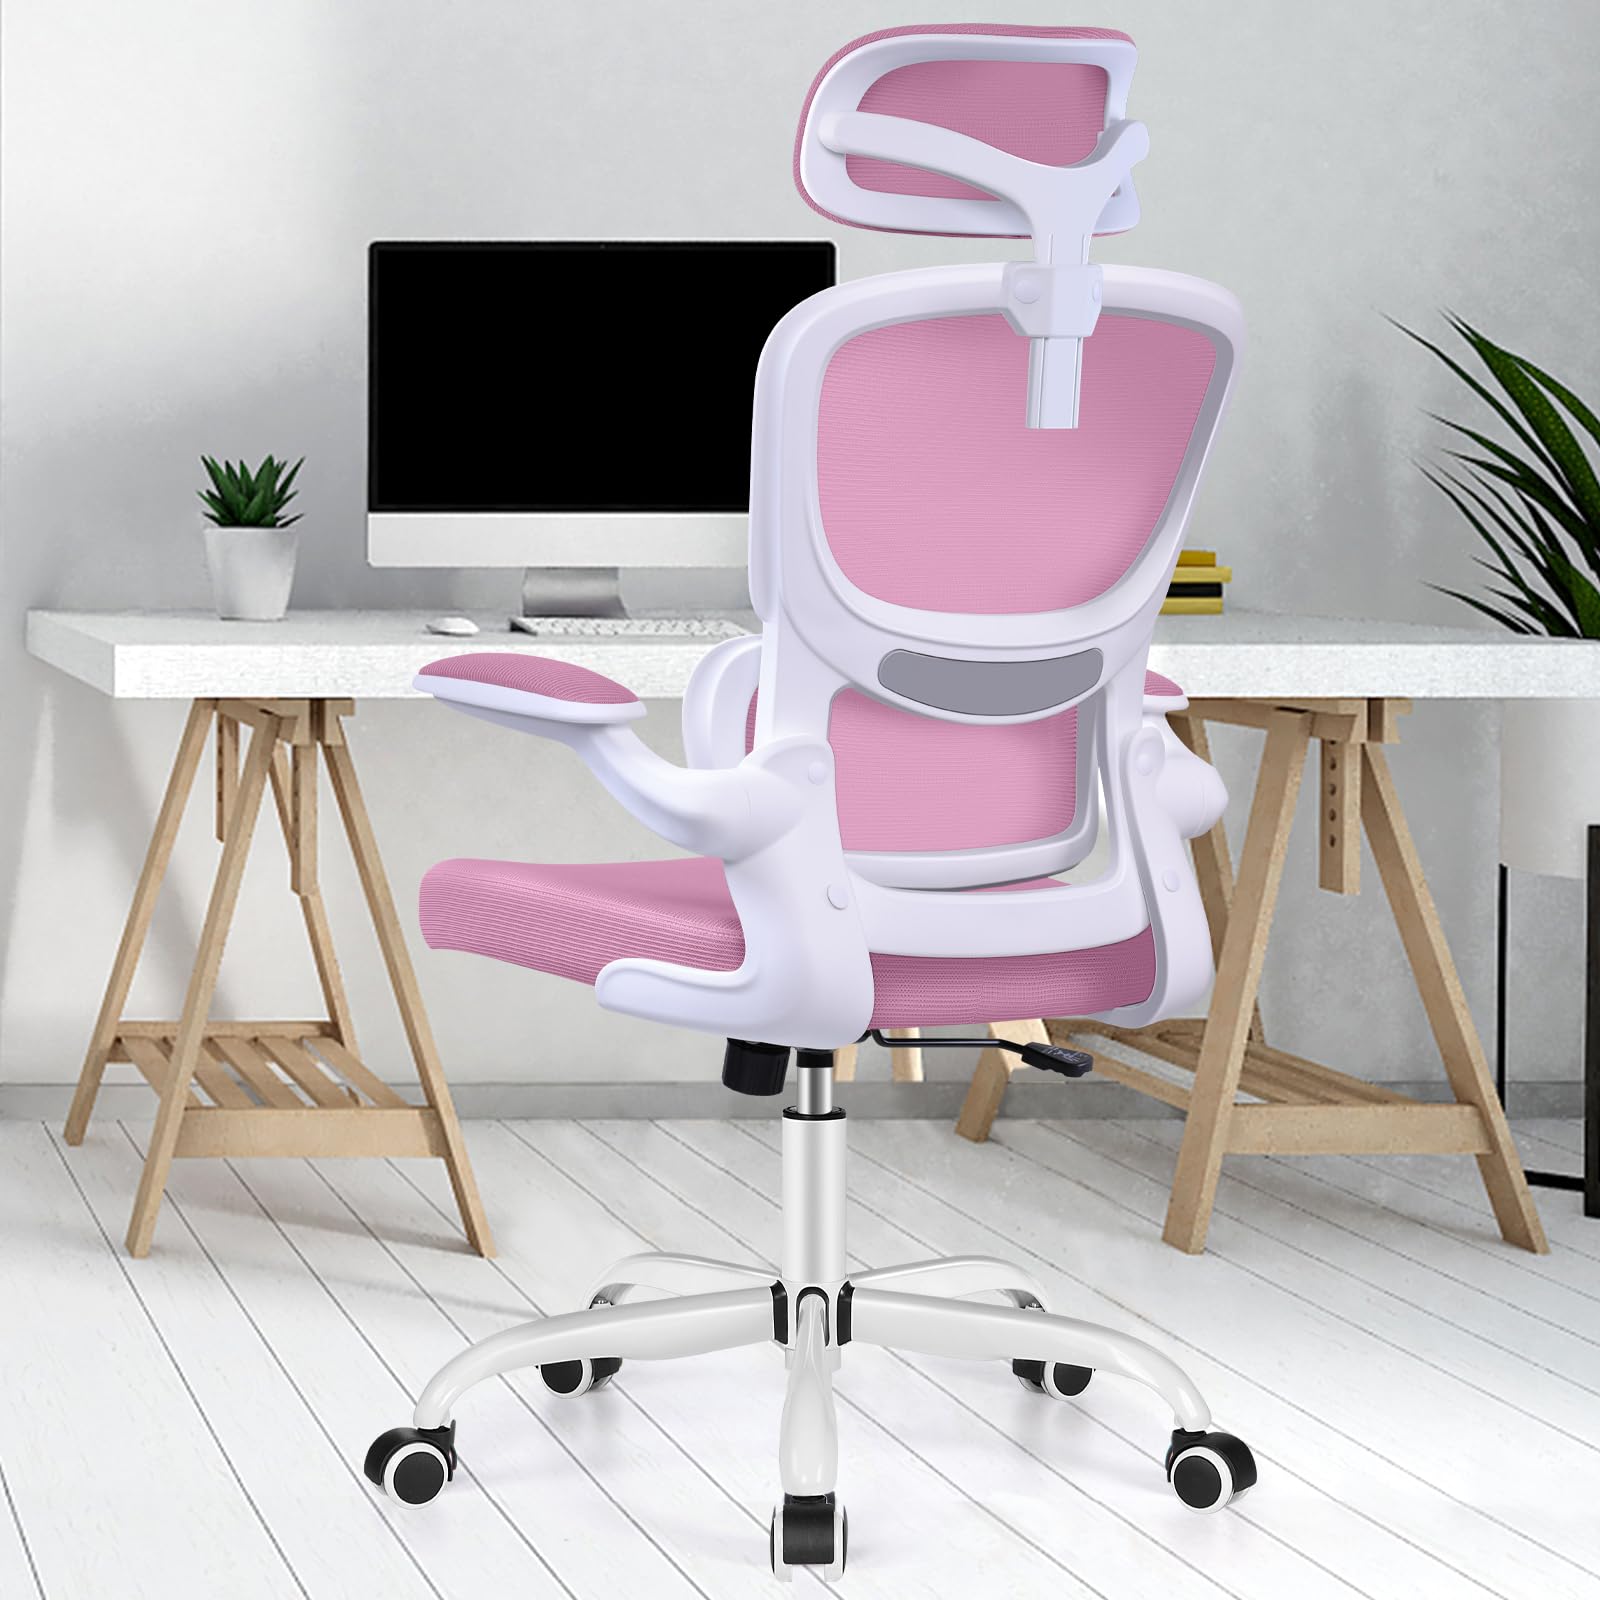 楽天松陰屋 楽天市場店Razzor オフィスチェア 椅子 イス 疲れない 勉強 学習 360度回転 腰に良い テレワーク 人間工学椅子 デスクチェア ランバーサポート付き 可動式ヘッドレスト 通気性メッシュ パソコン ピンク RZ2202H-Pink